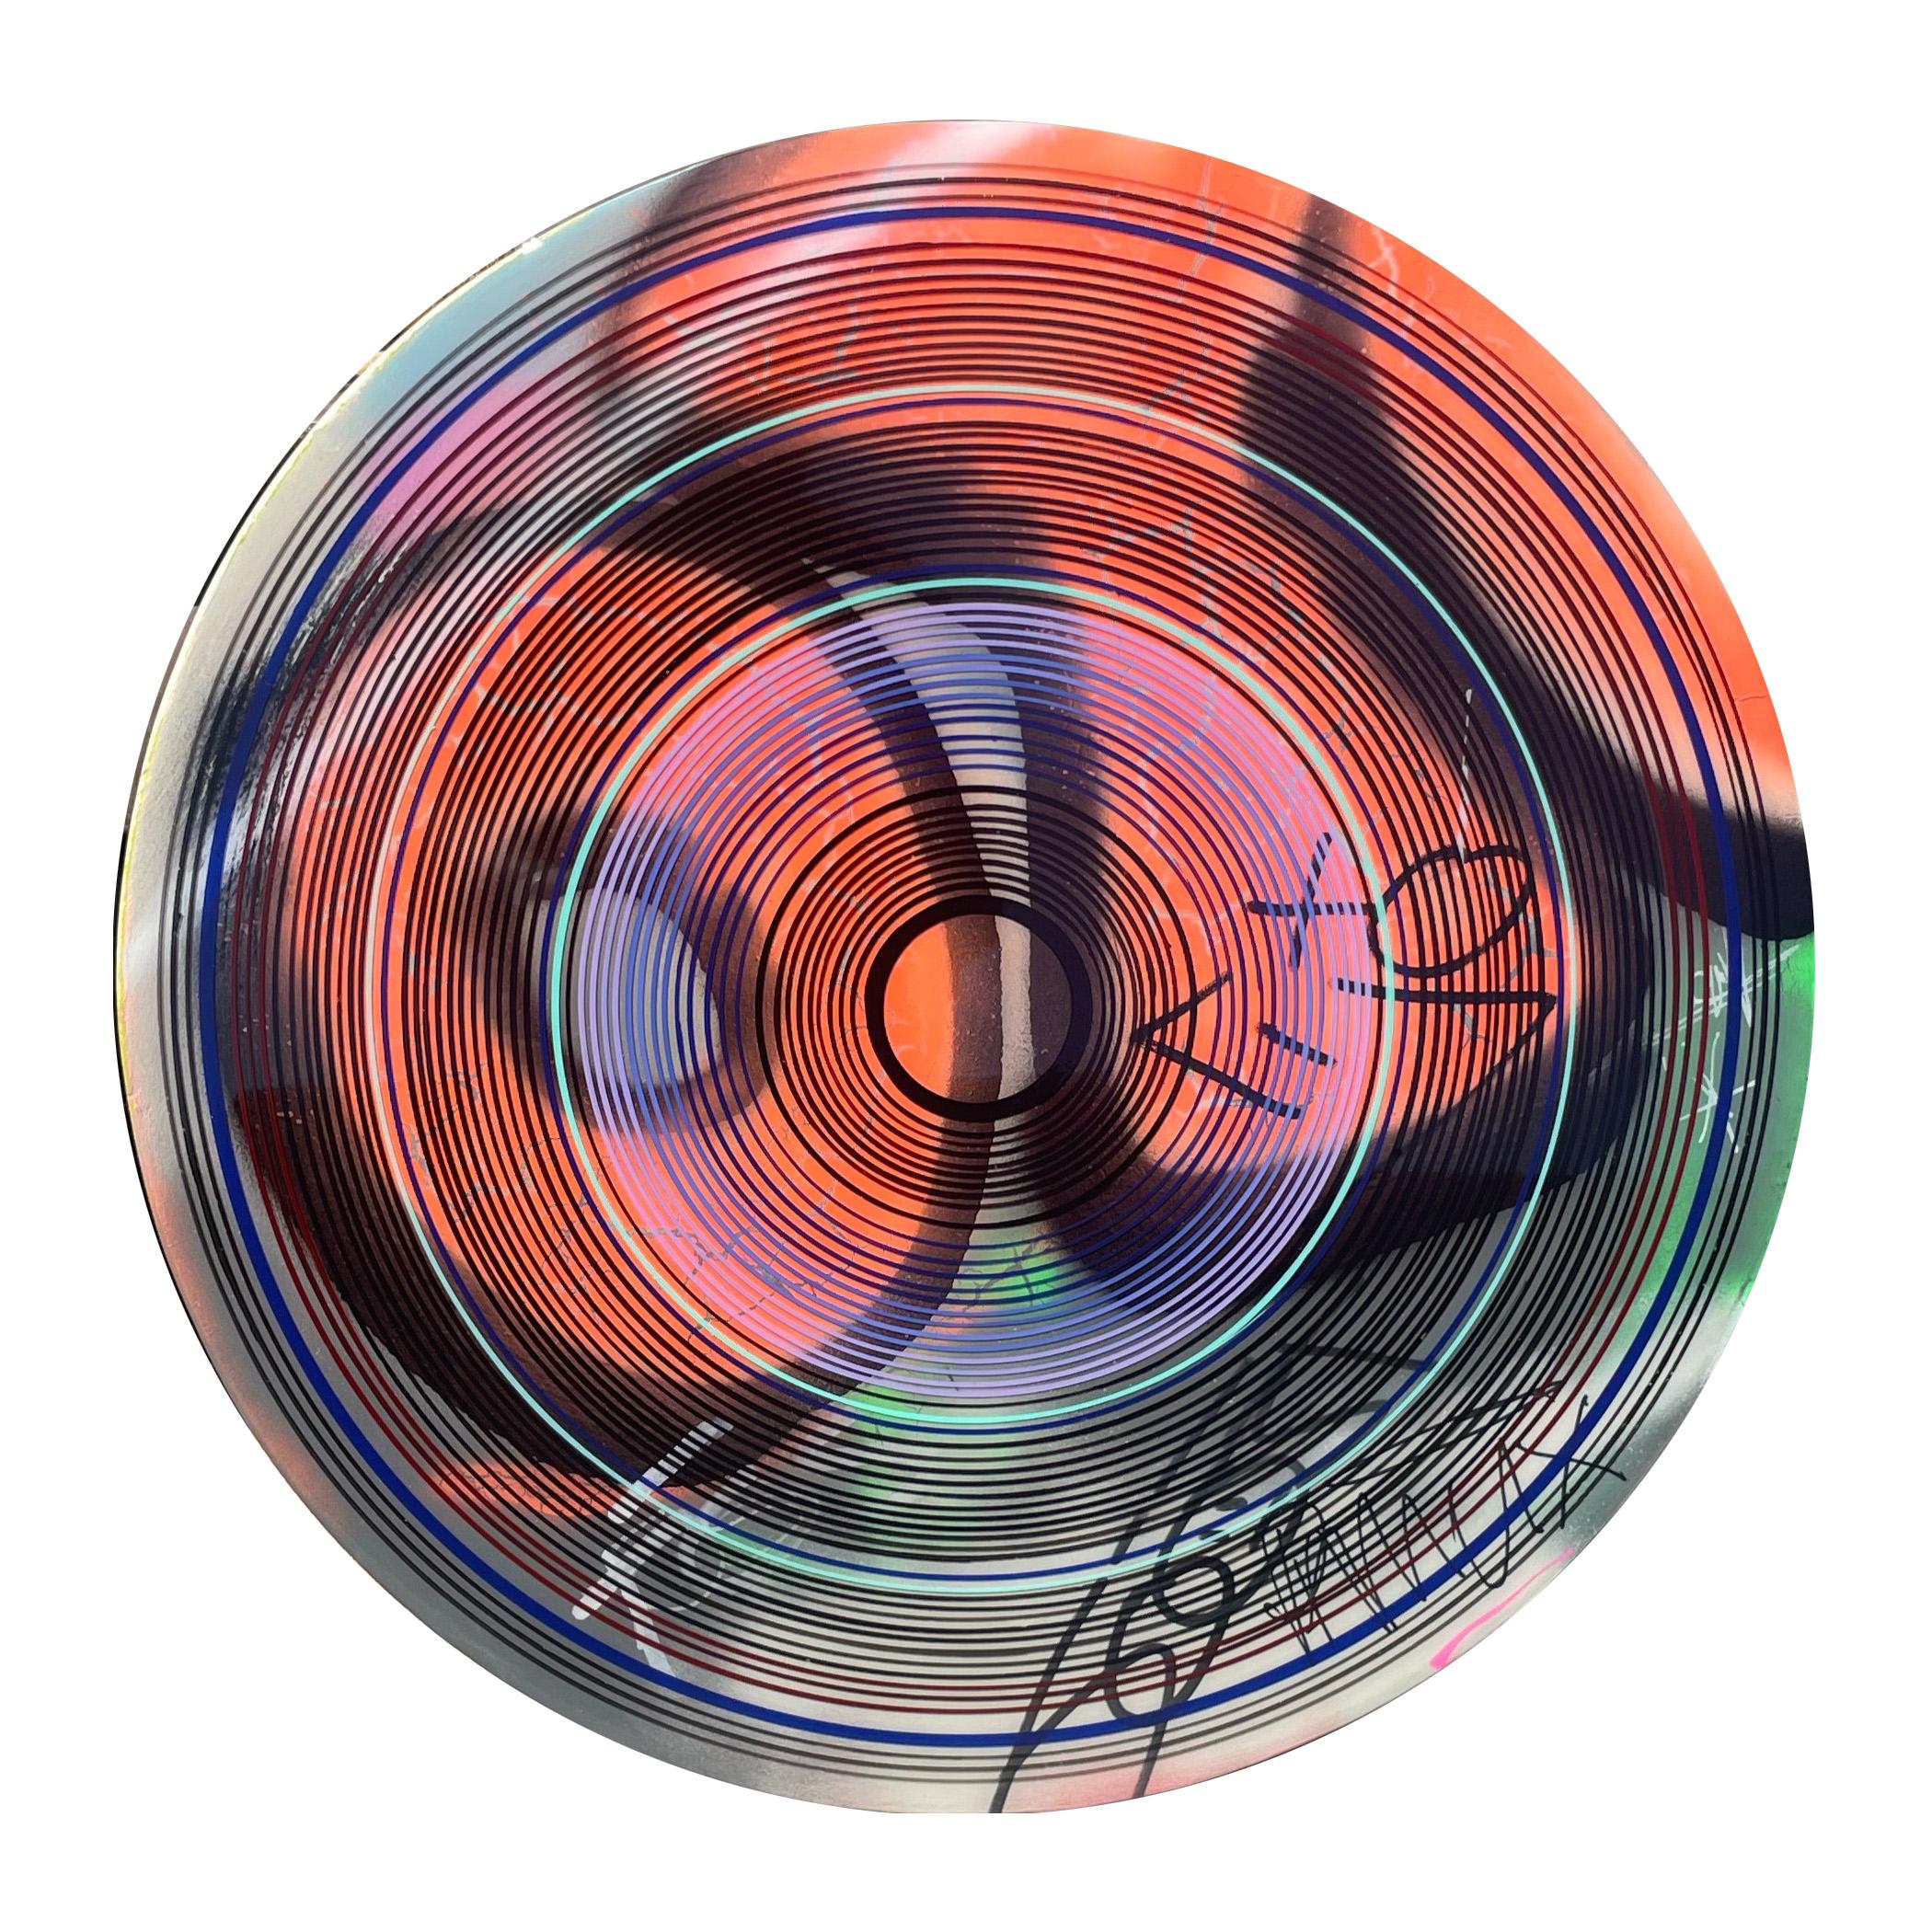 "CBGB 2 (Study)" Peinture contemporaine abstraite colorée en forme de cercle concentrique